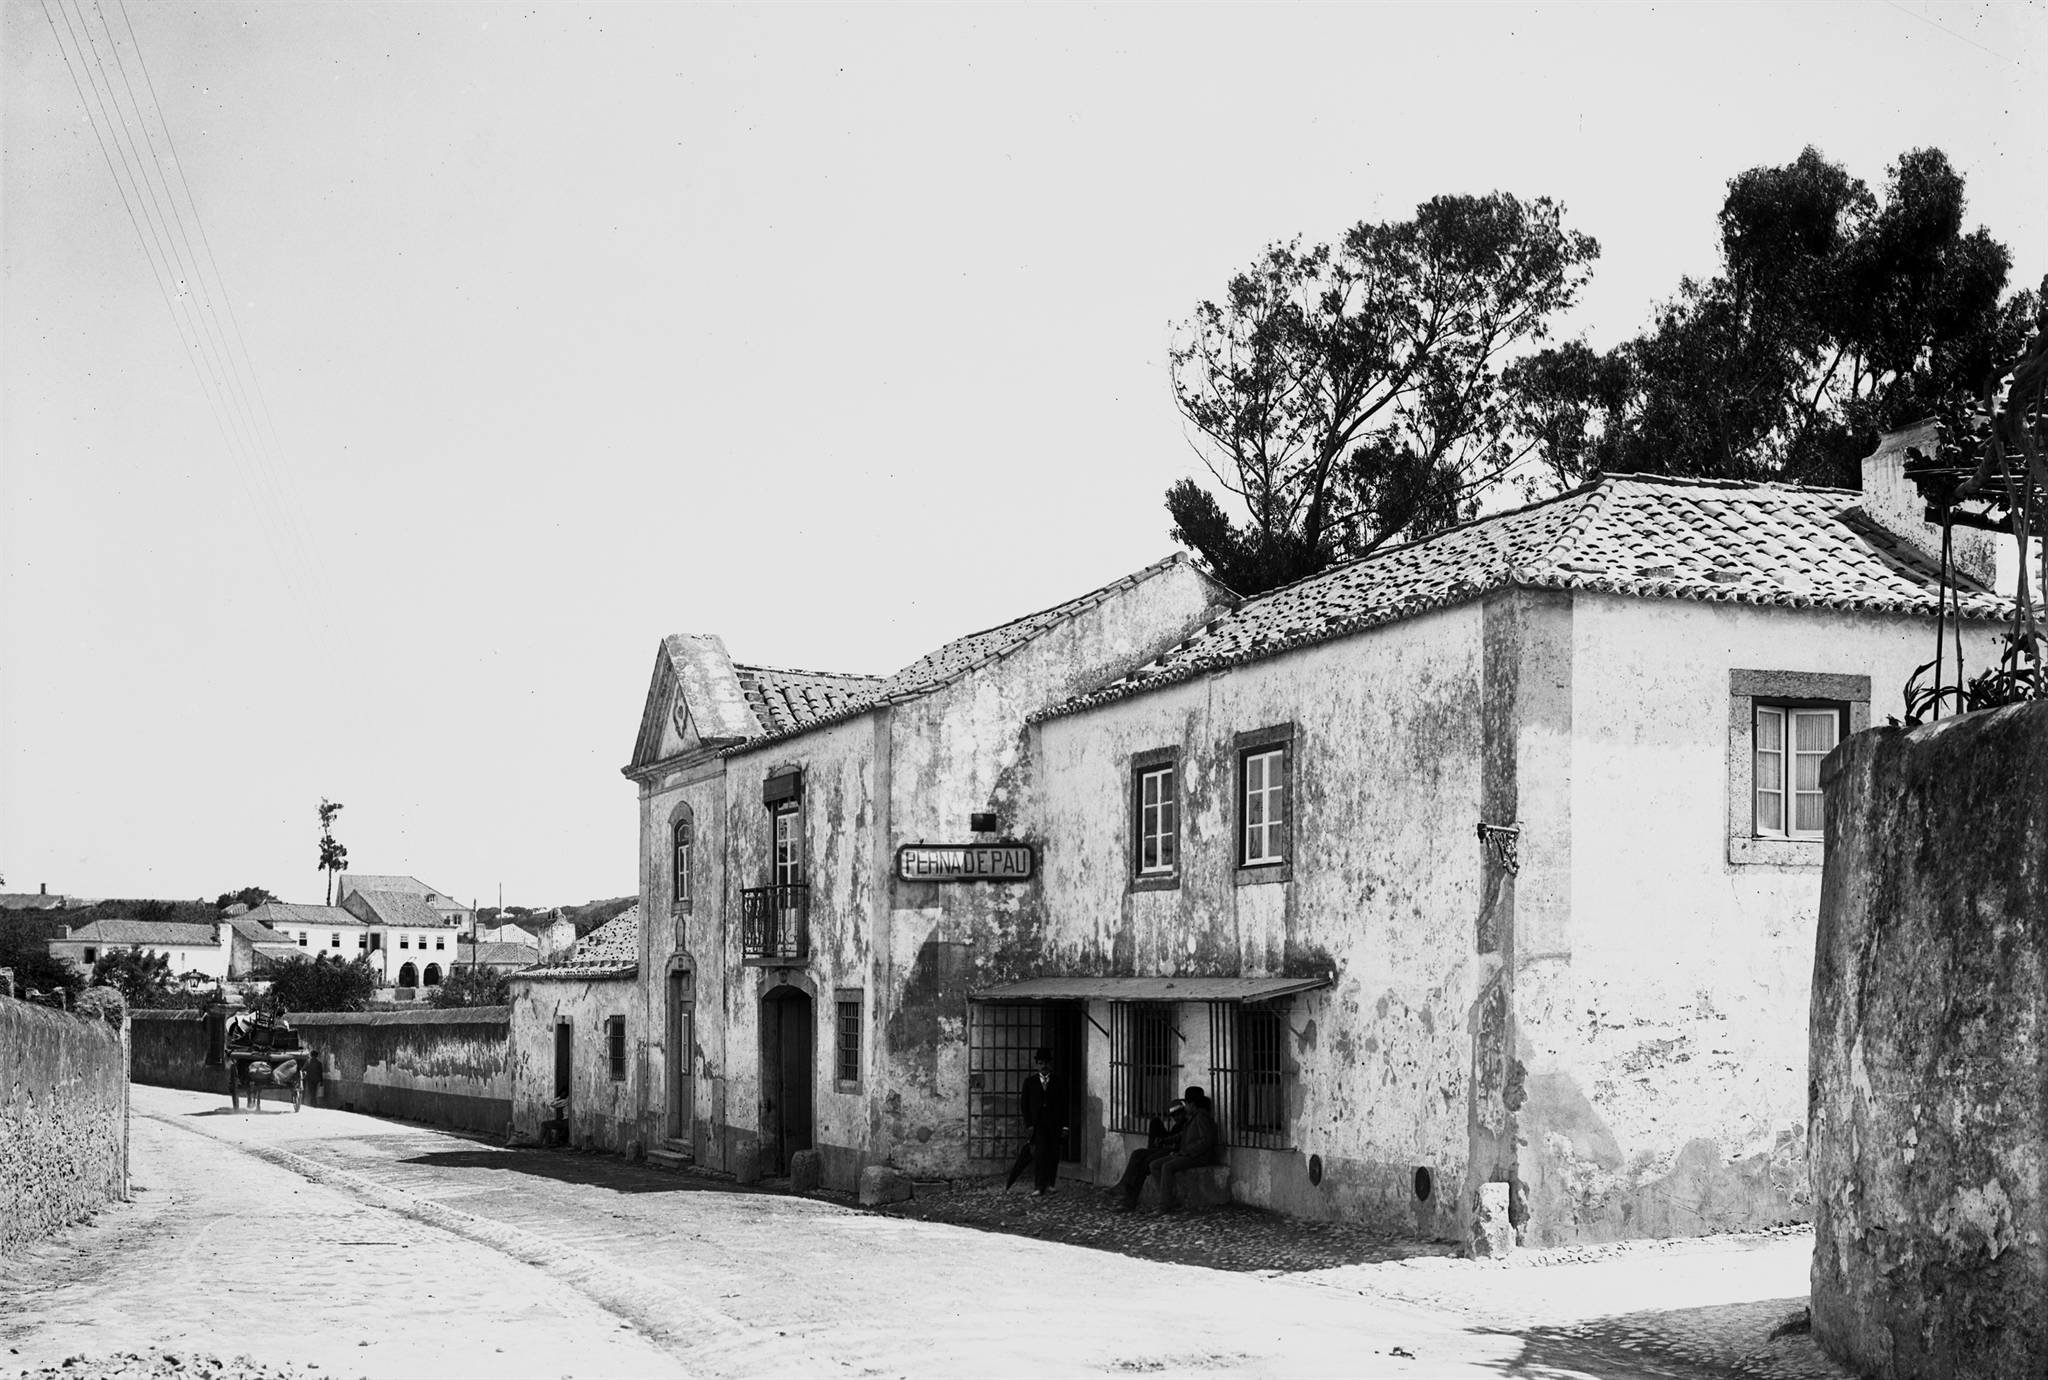 Perna de Pau, Areeiro (P.Guedes, c. 1900)